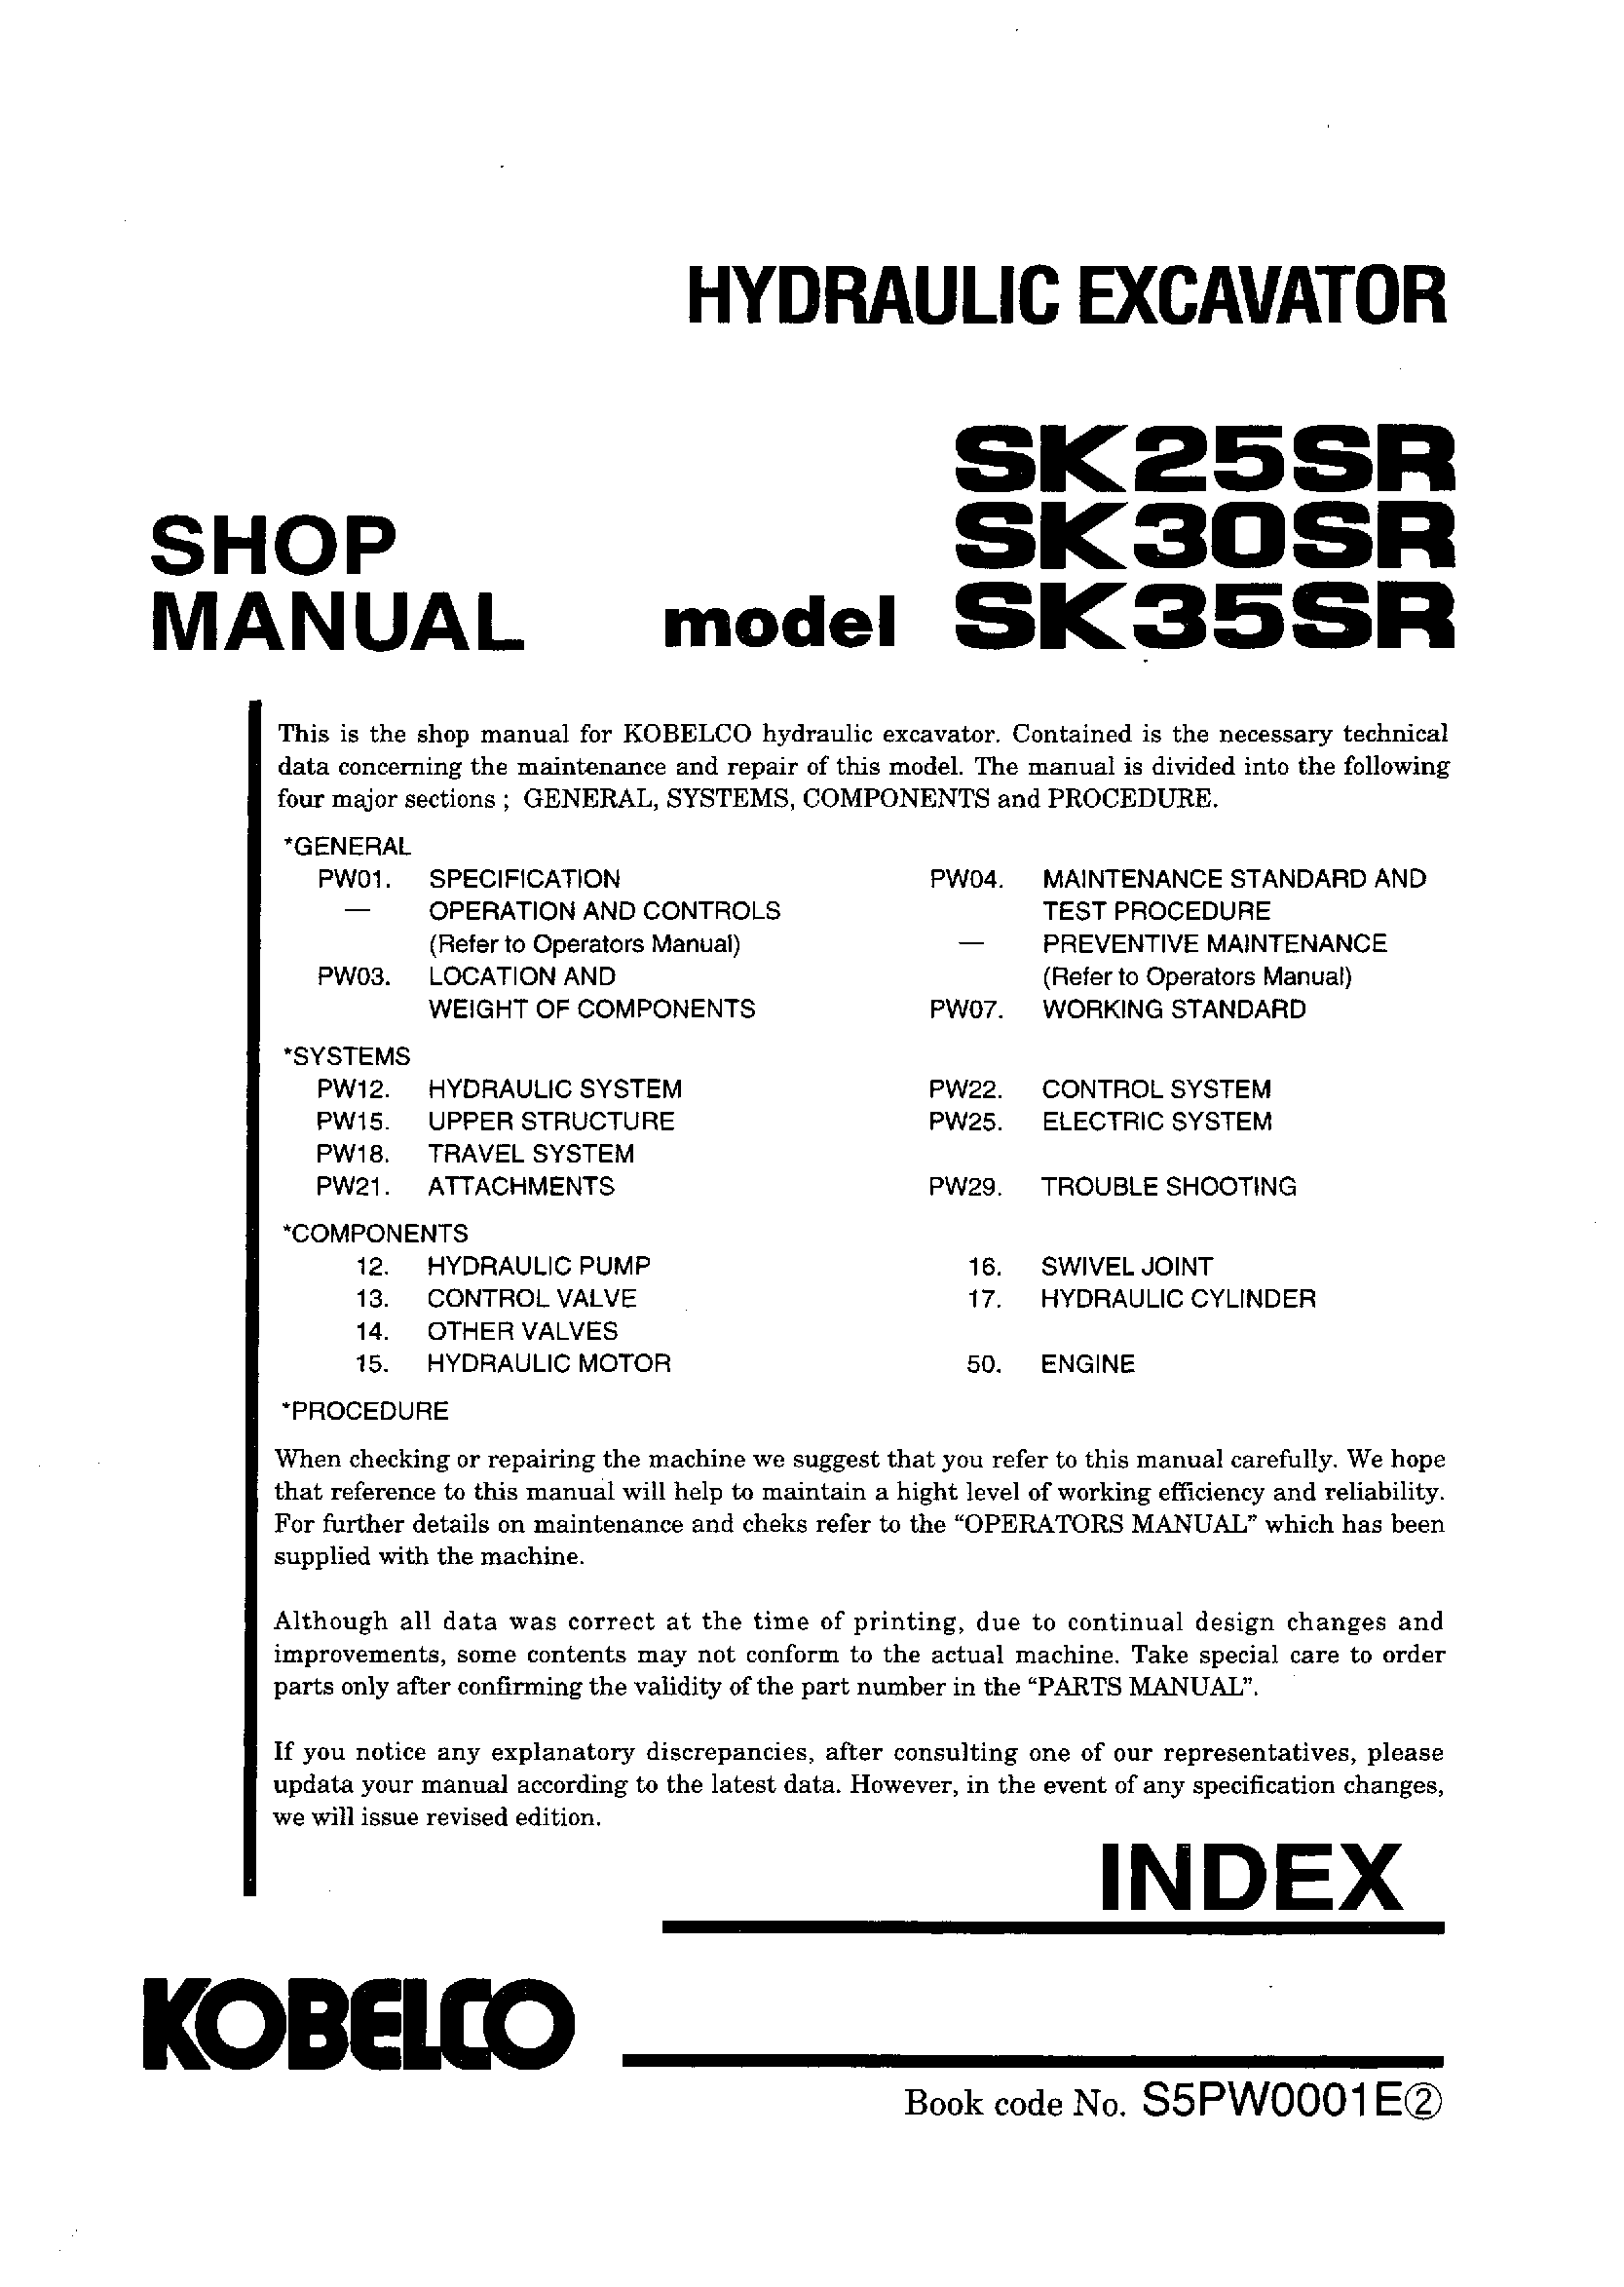 Kobelco SK25SR SK30SR SK35SR Hydraulic Excavator Service Manual